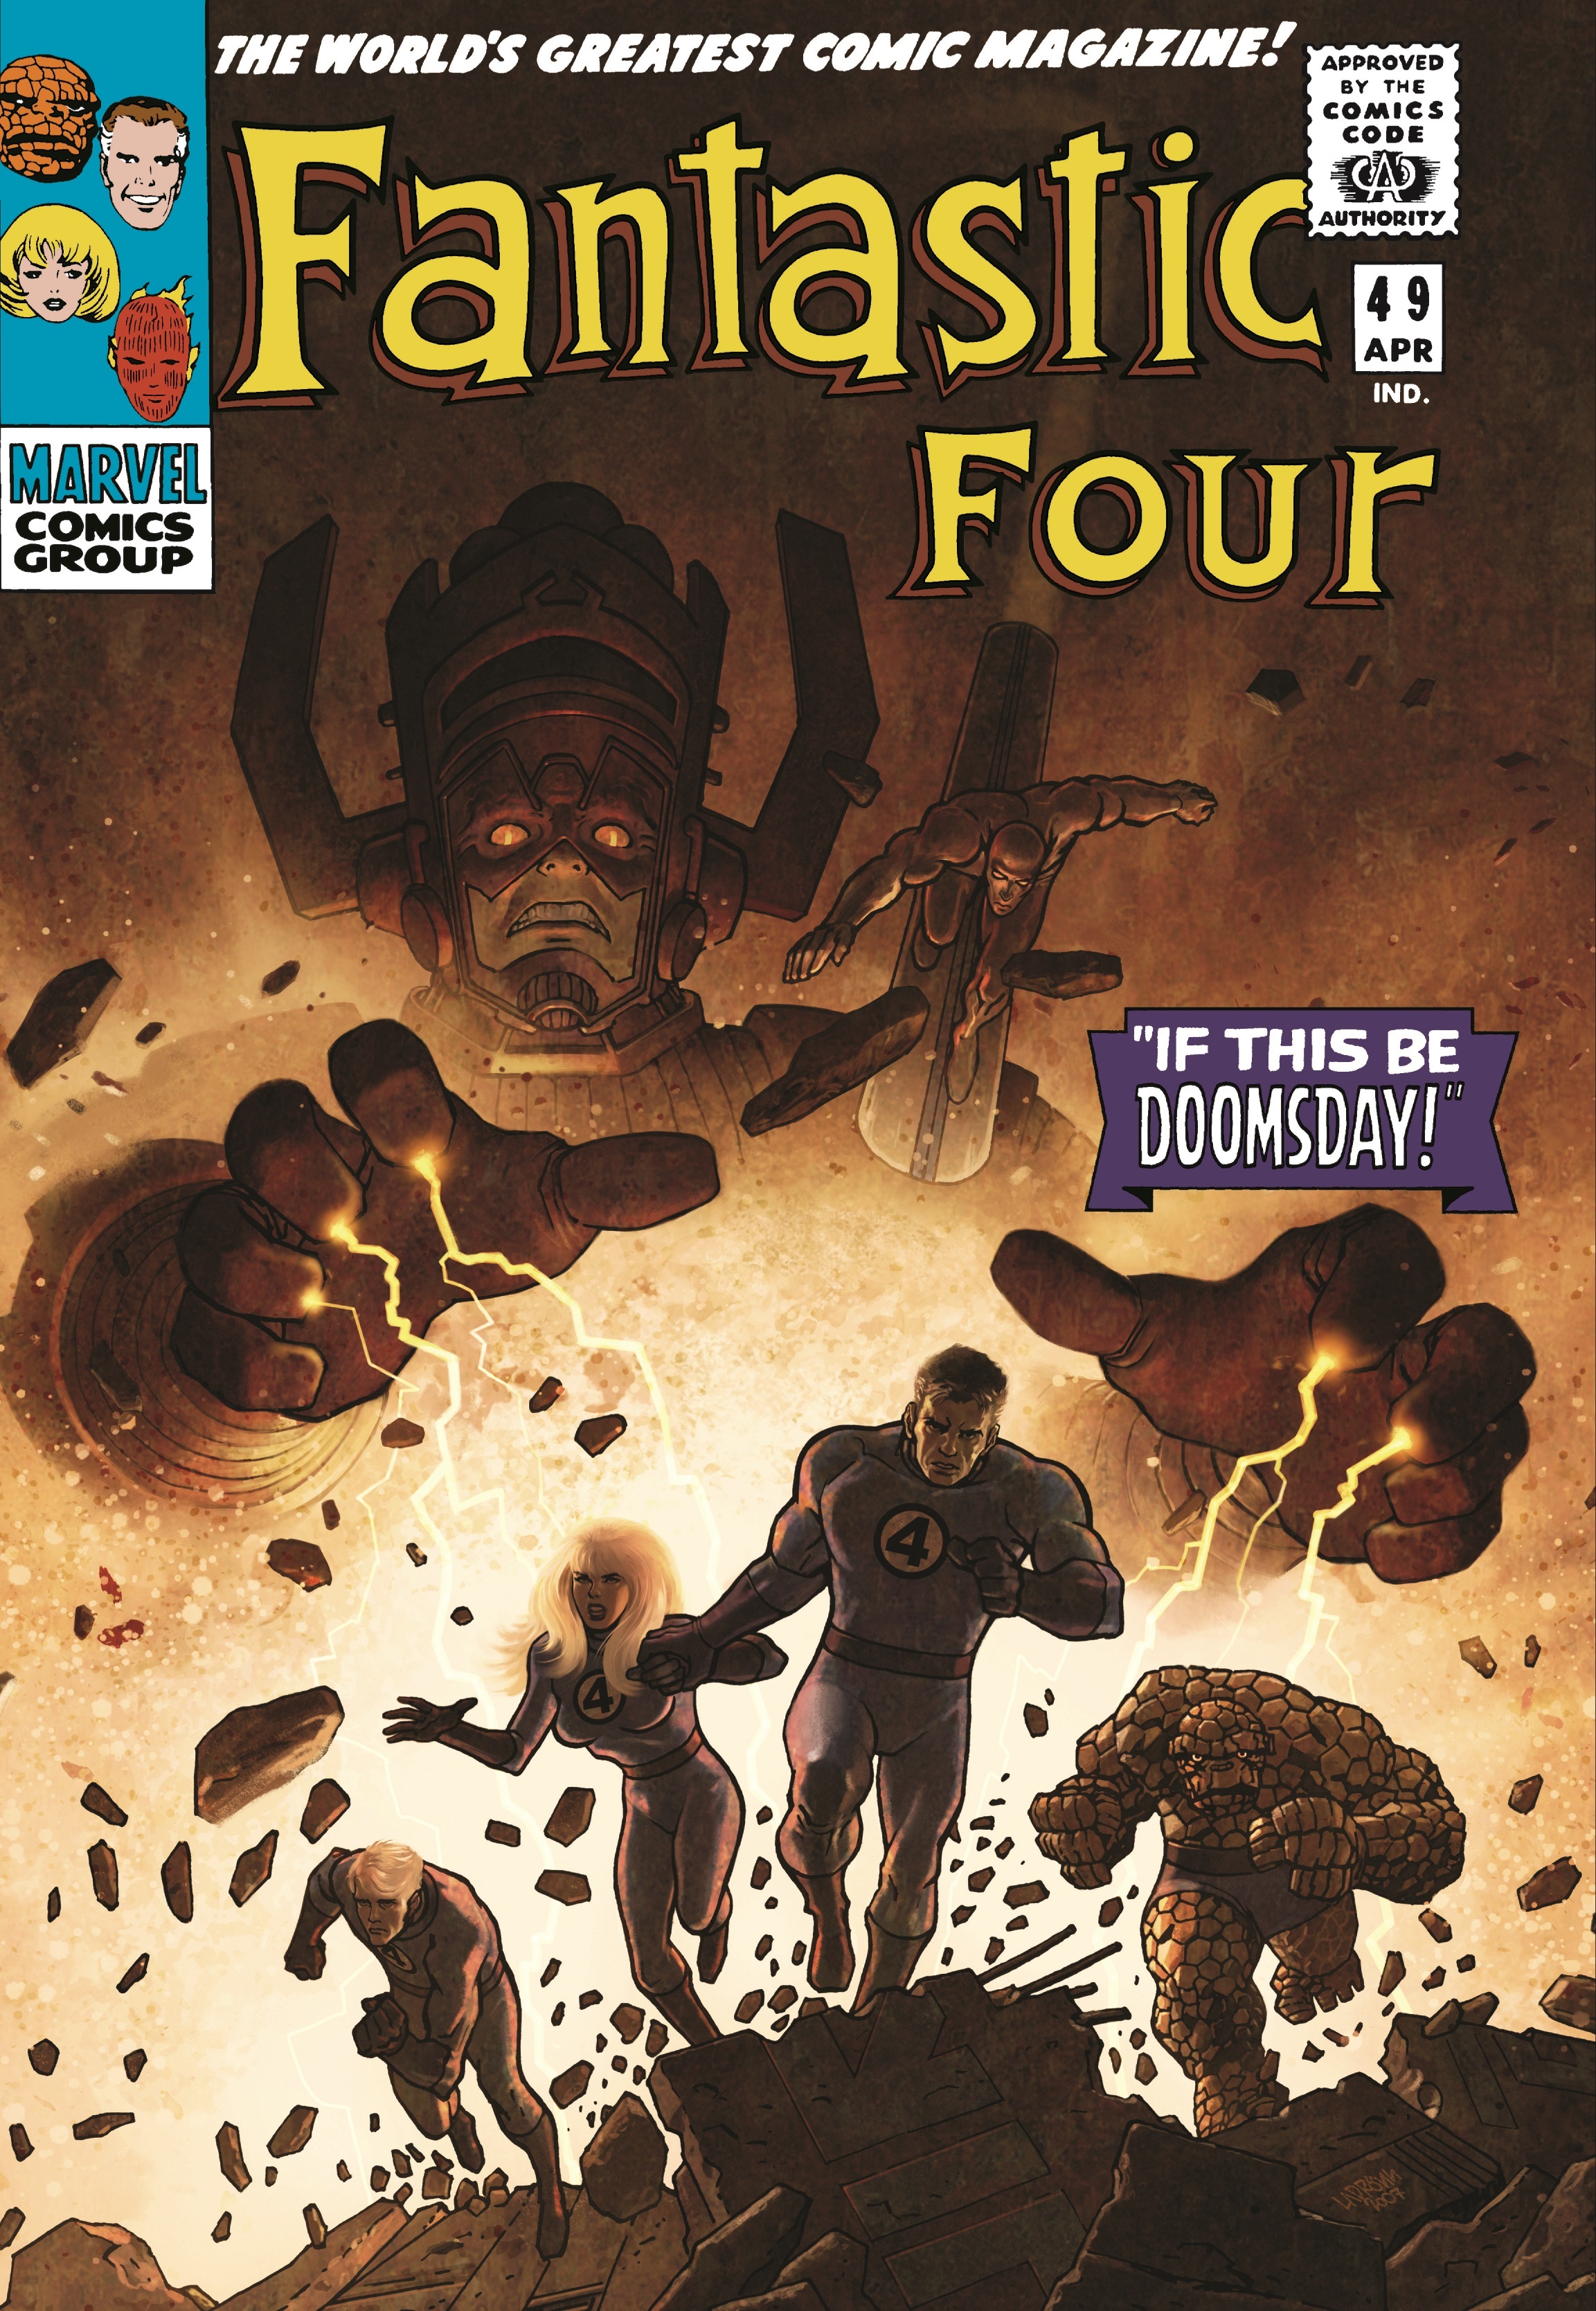 Fantastic Four Omnibus Vol. 2 (Hardcover)